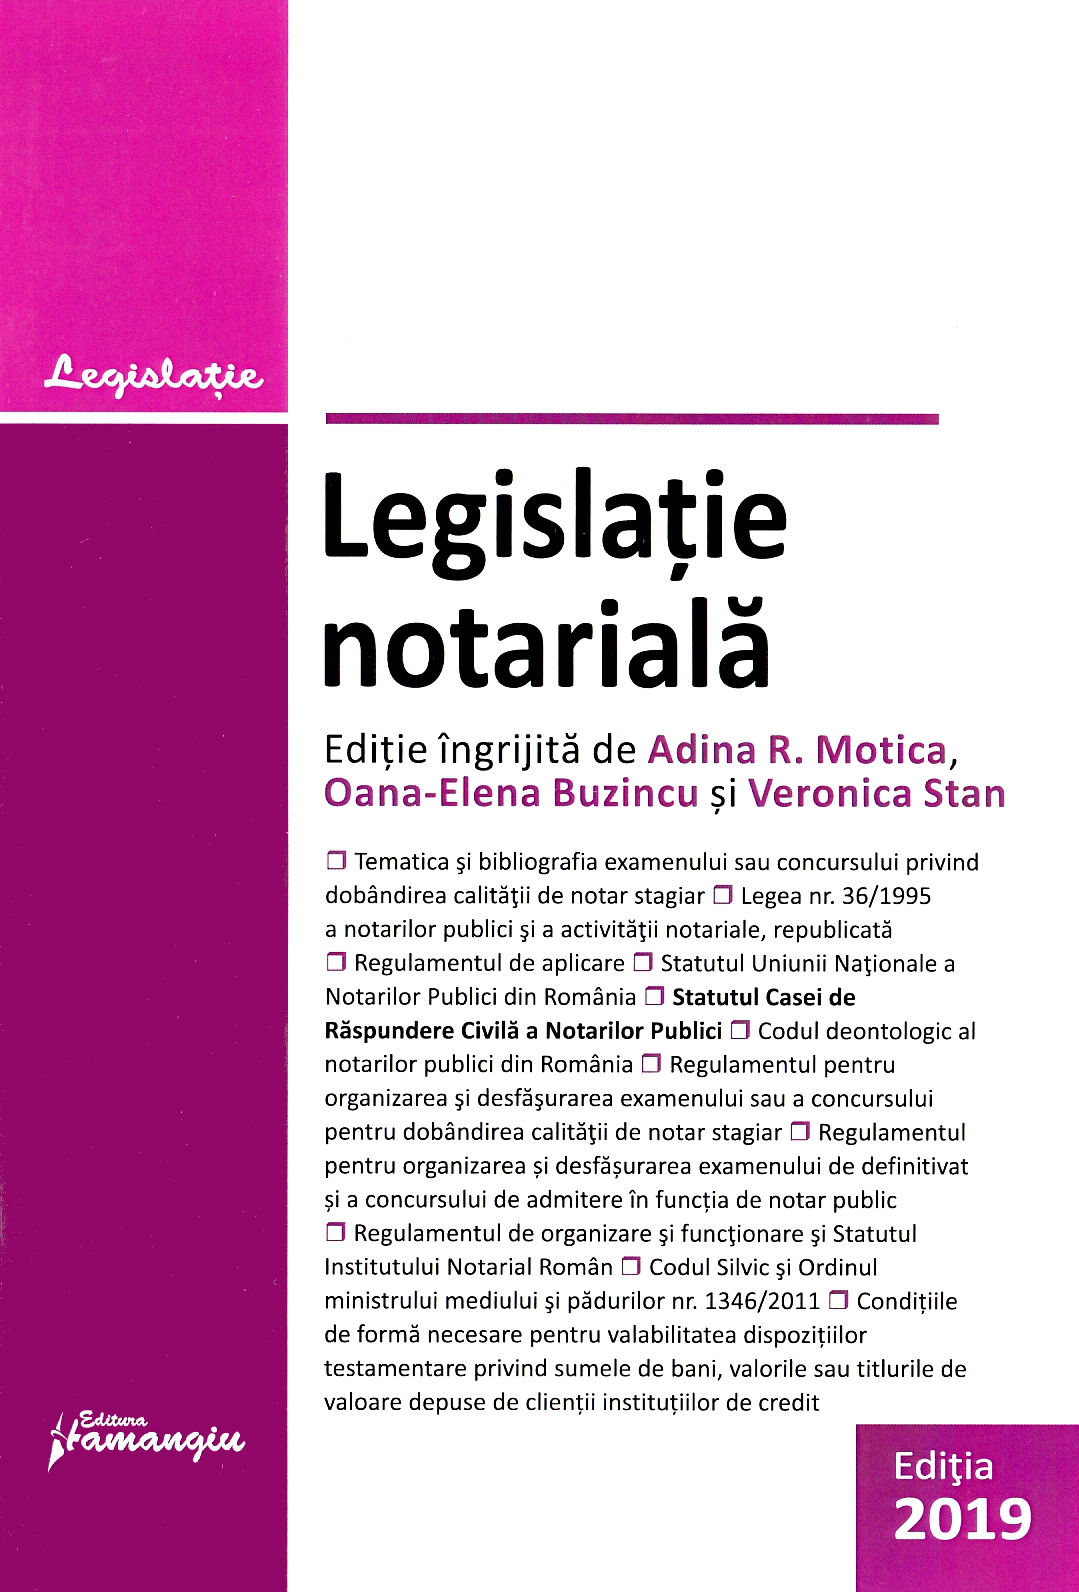 Legislatie notariala Act. 27 iunie 2019